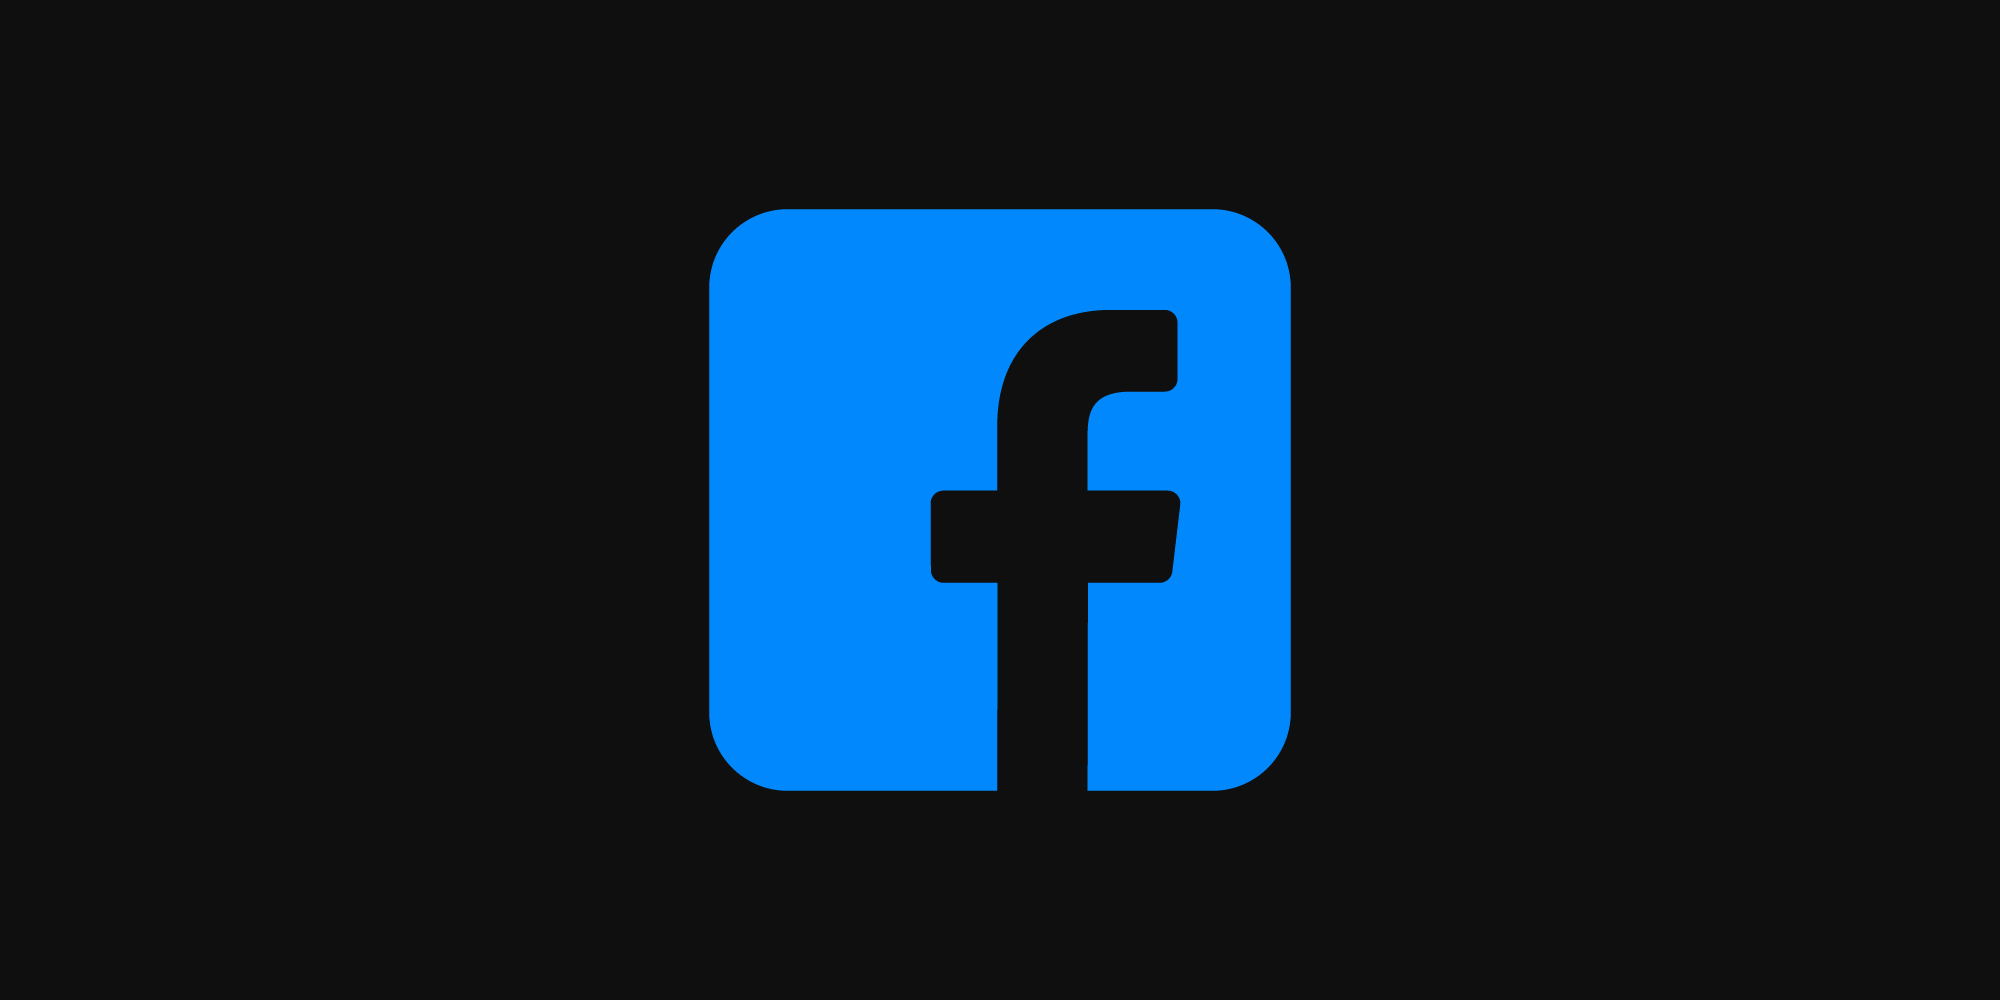 Facebook Redesign Goes Live, Adds Dark Mode | Digital Trends